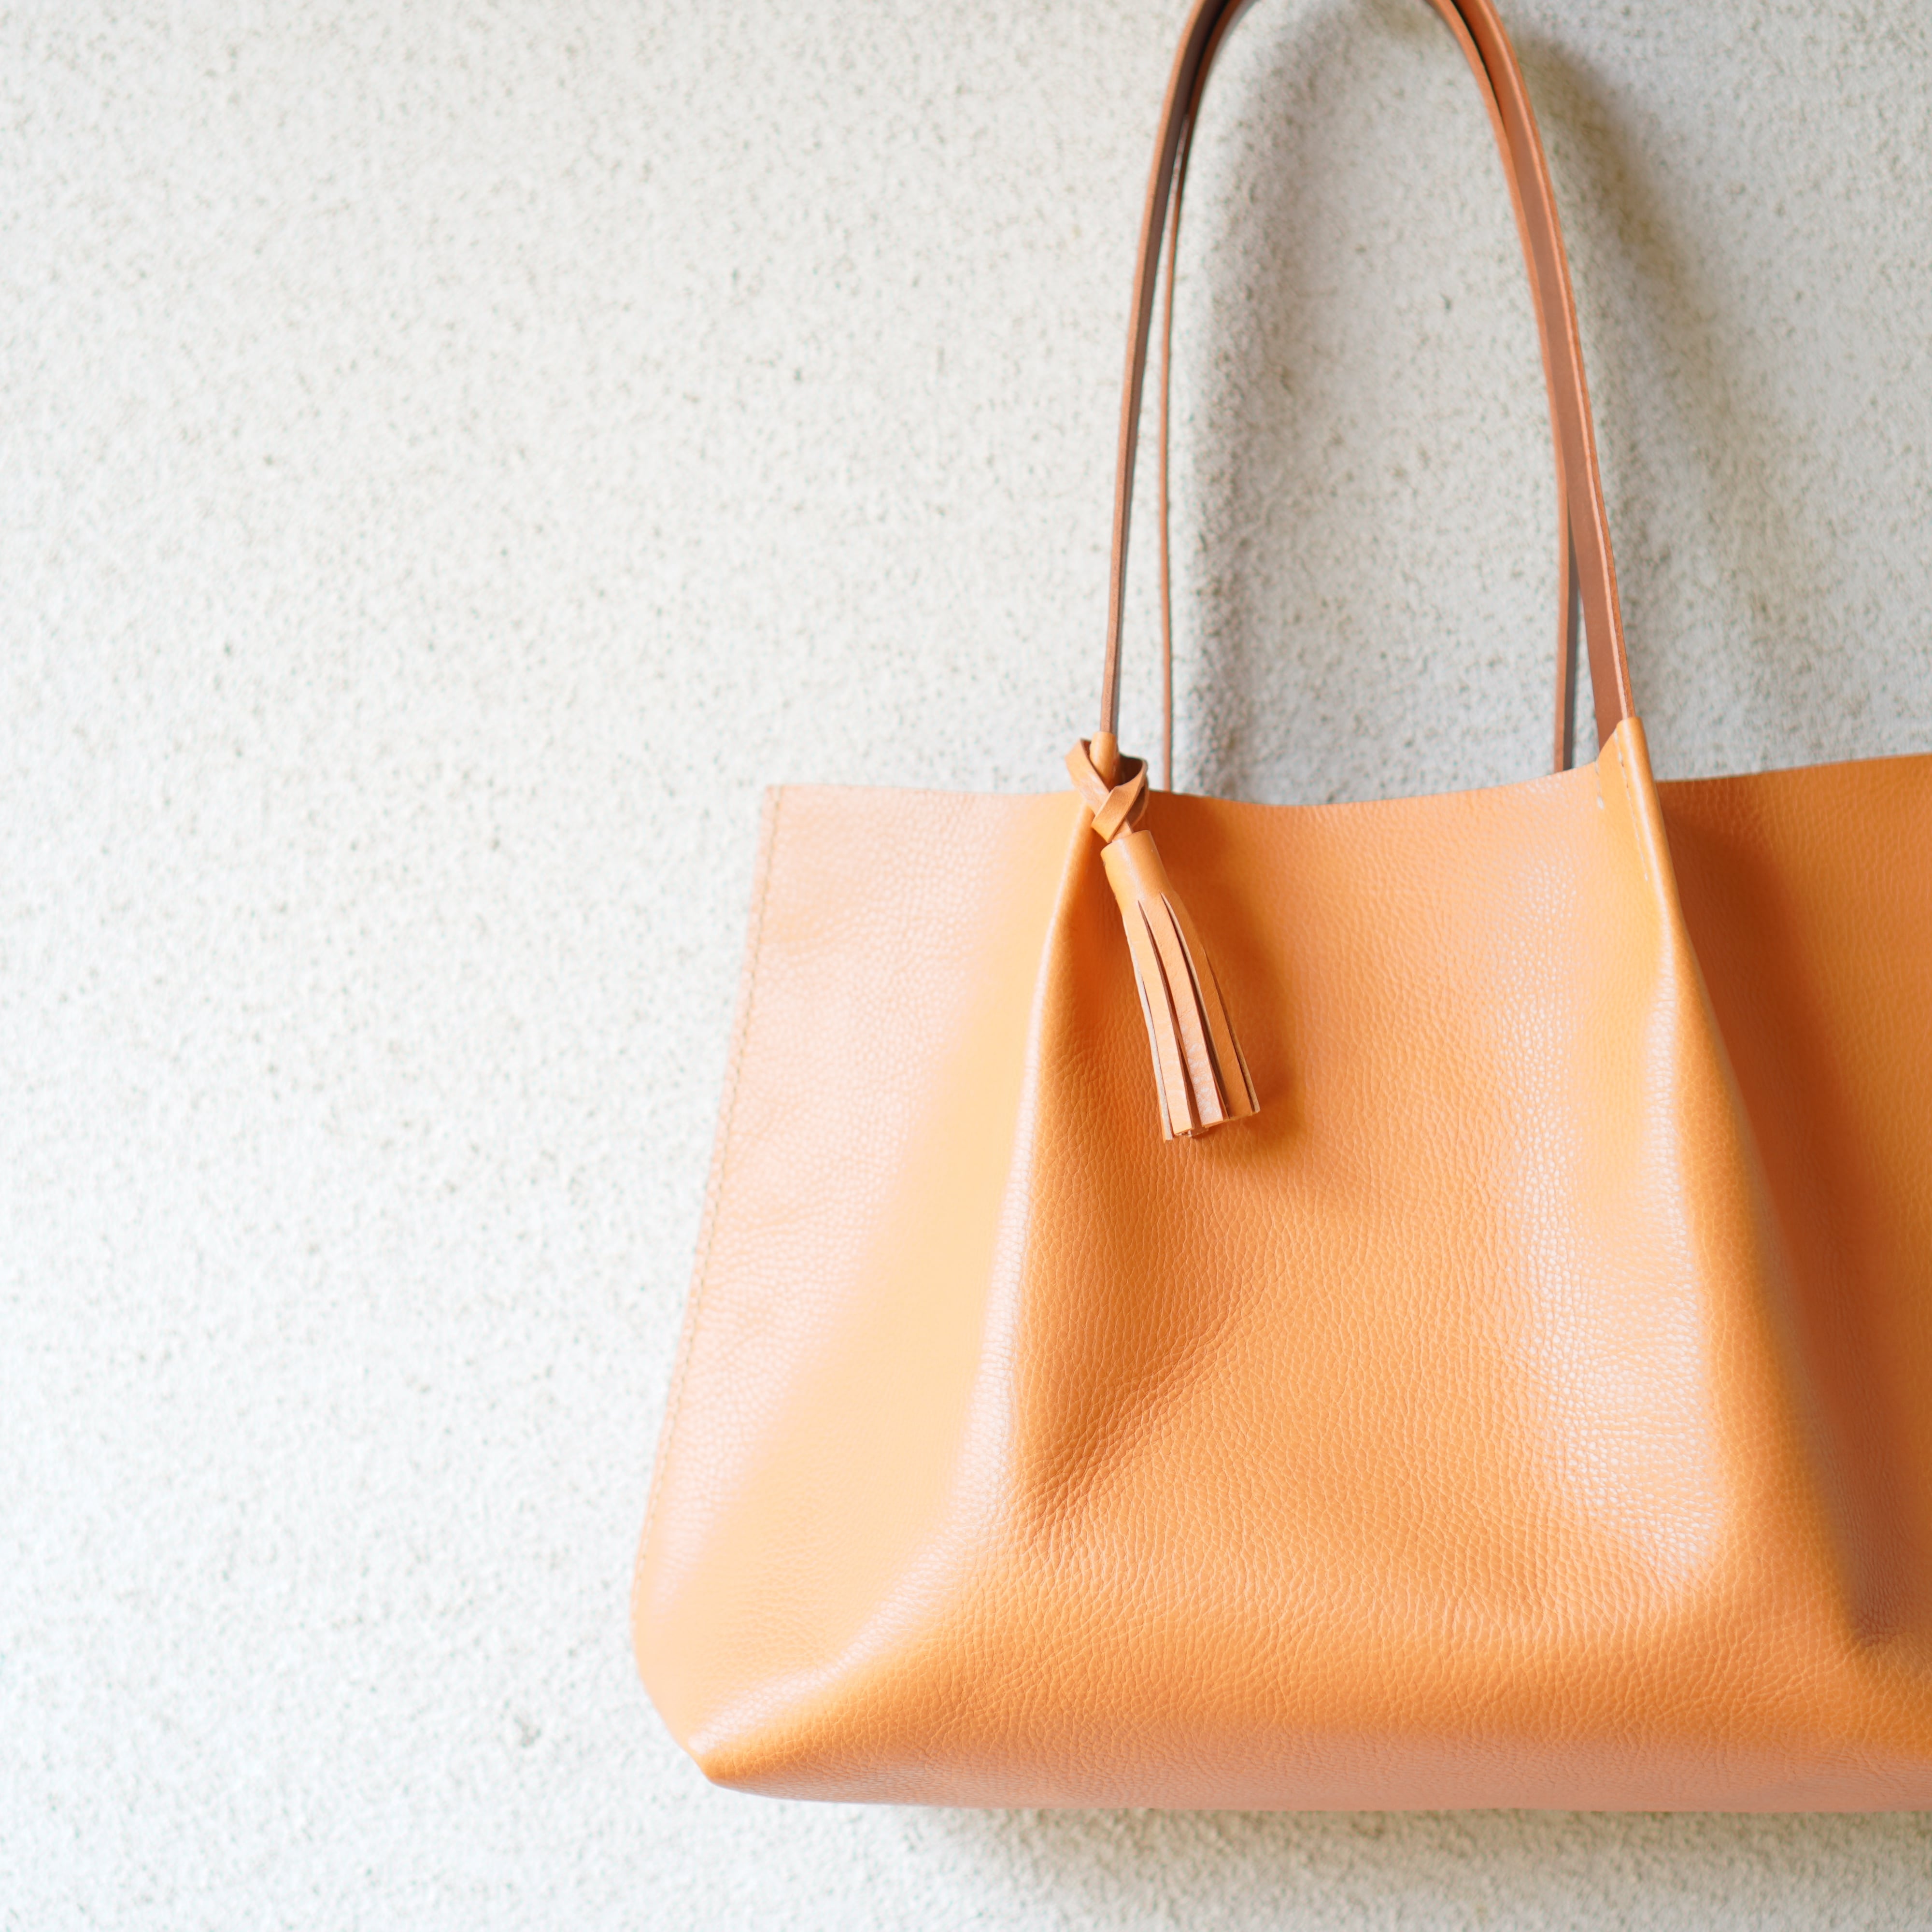 イタリアの、素材を使い日本で縫製した鞄です。